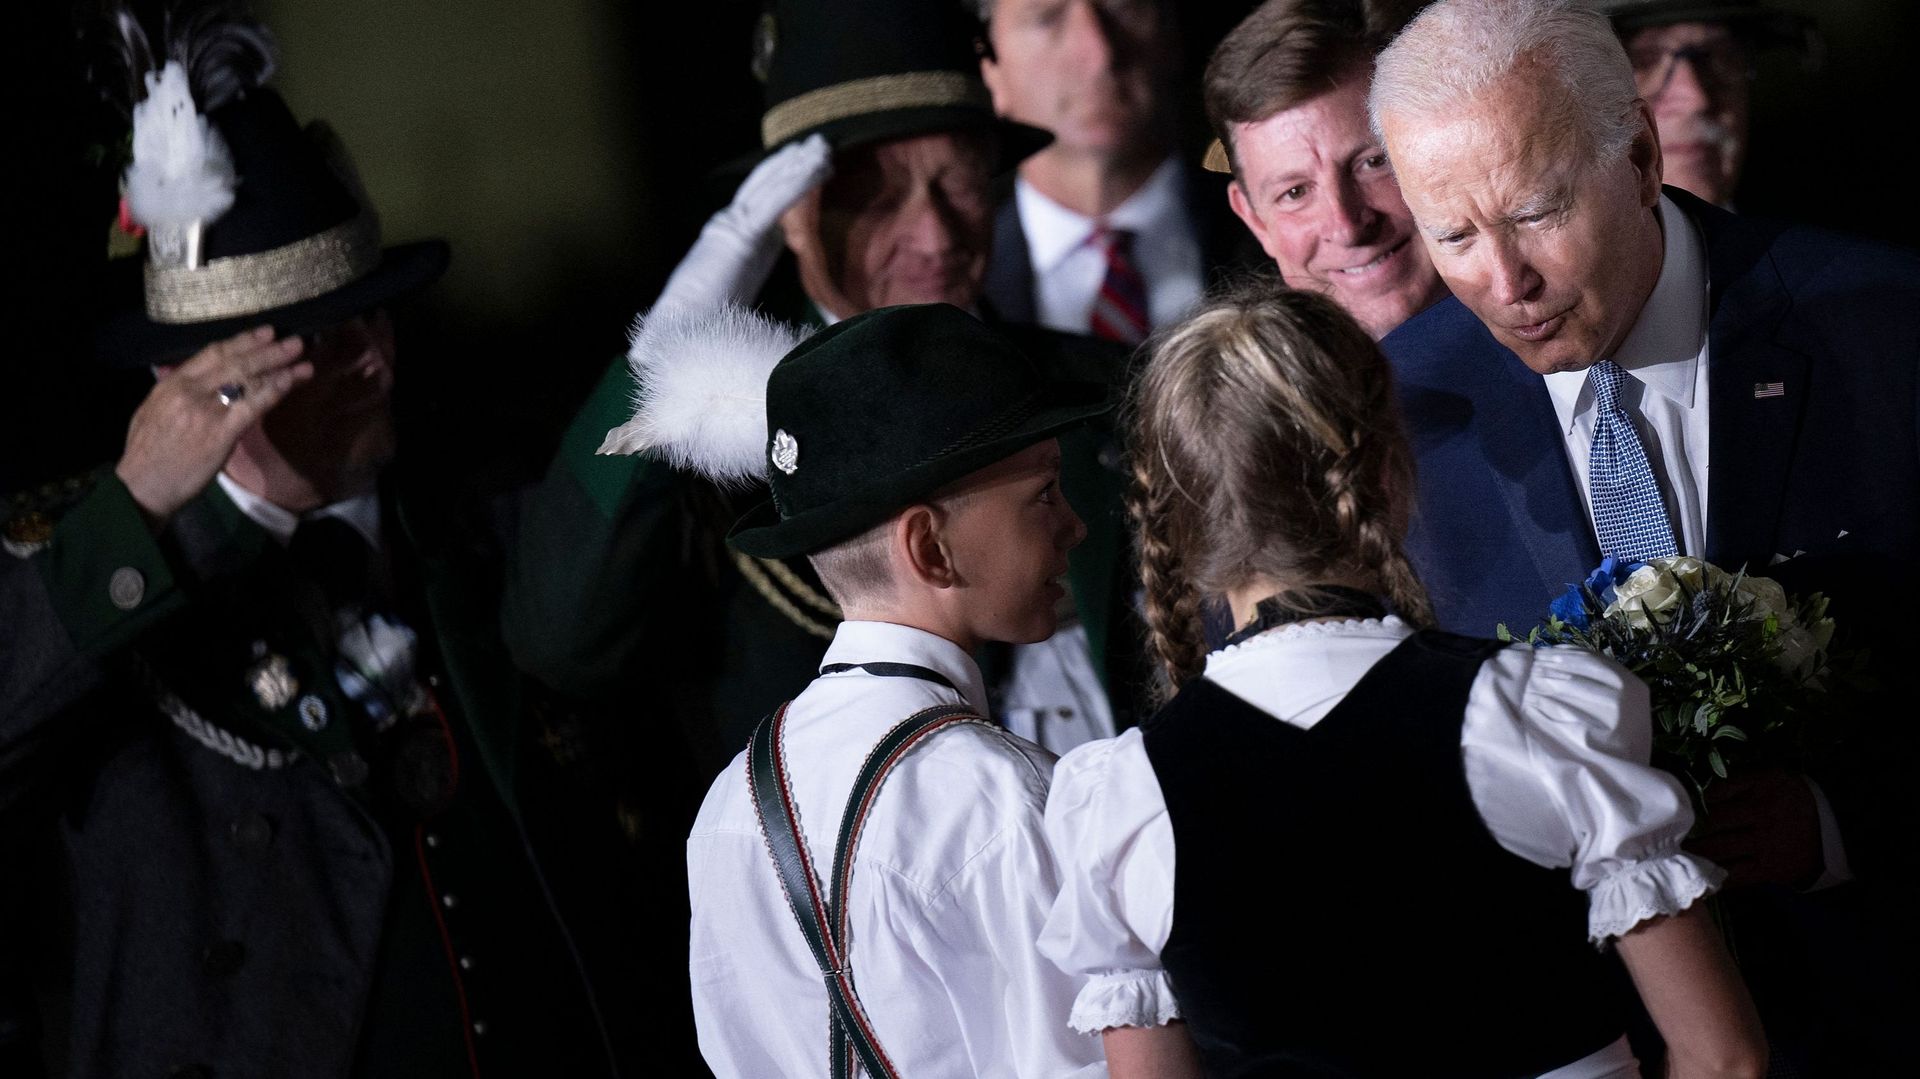 Le président américain Joe Biden (R) est accueilli par des enfants portant des vêtements traditionnels bavarois à son arrivée à l'aéroport Franz Josef Strauss de Munich, dans le sud de l'Allemagne, le 25 juin 2022, à la veille du sommet du G7.